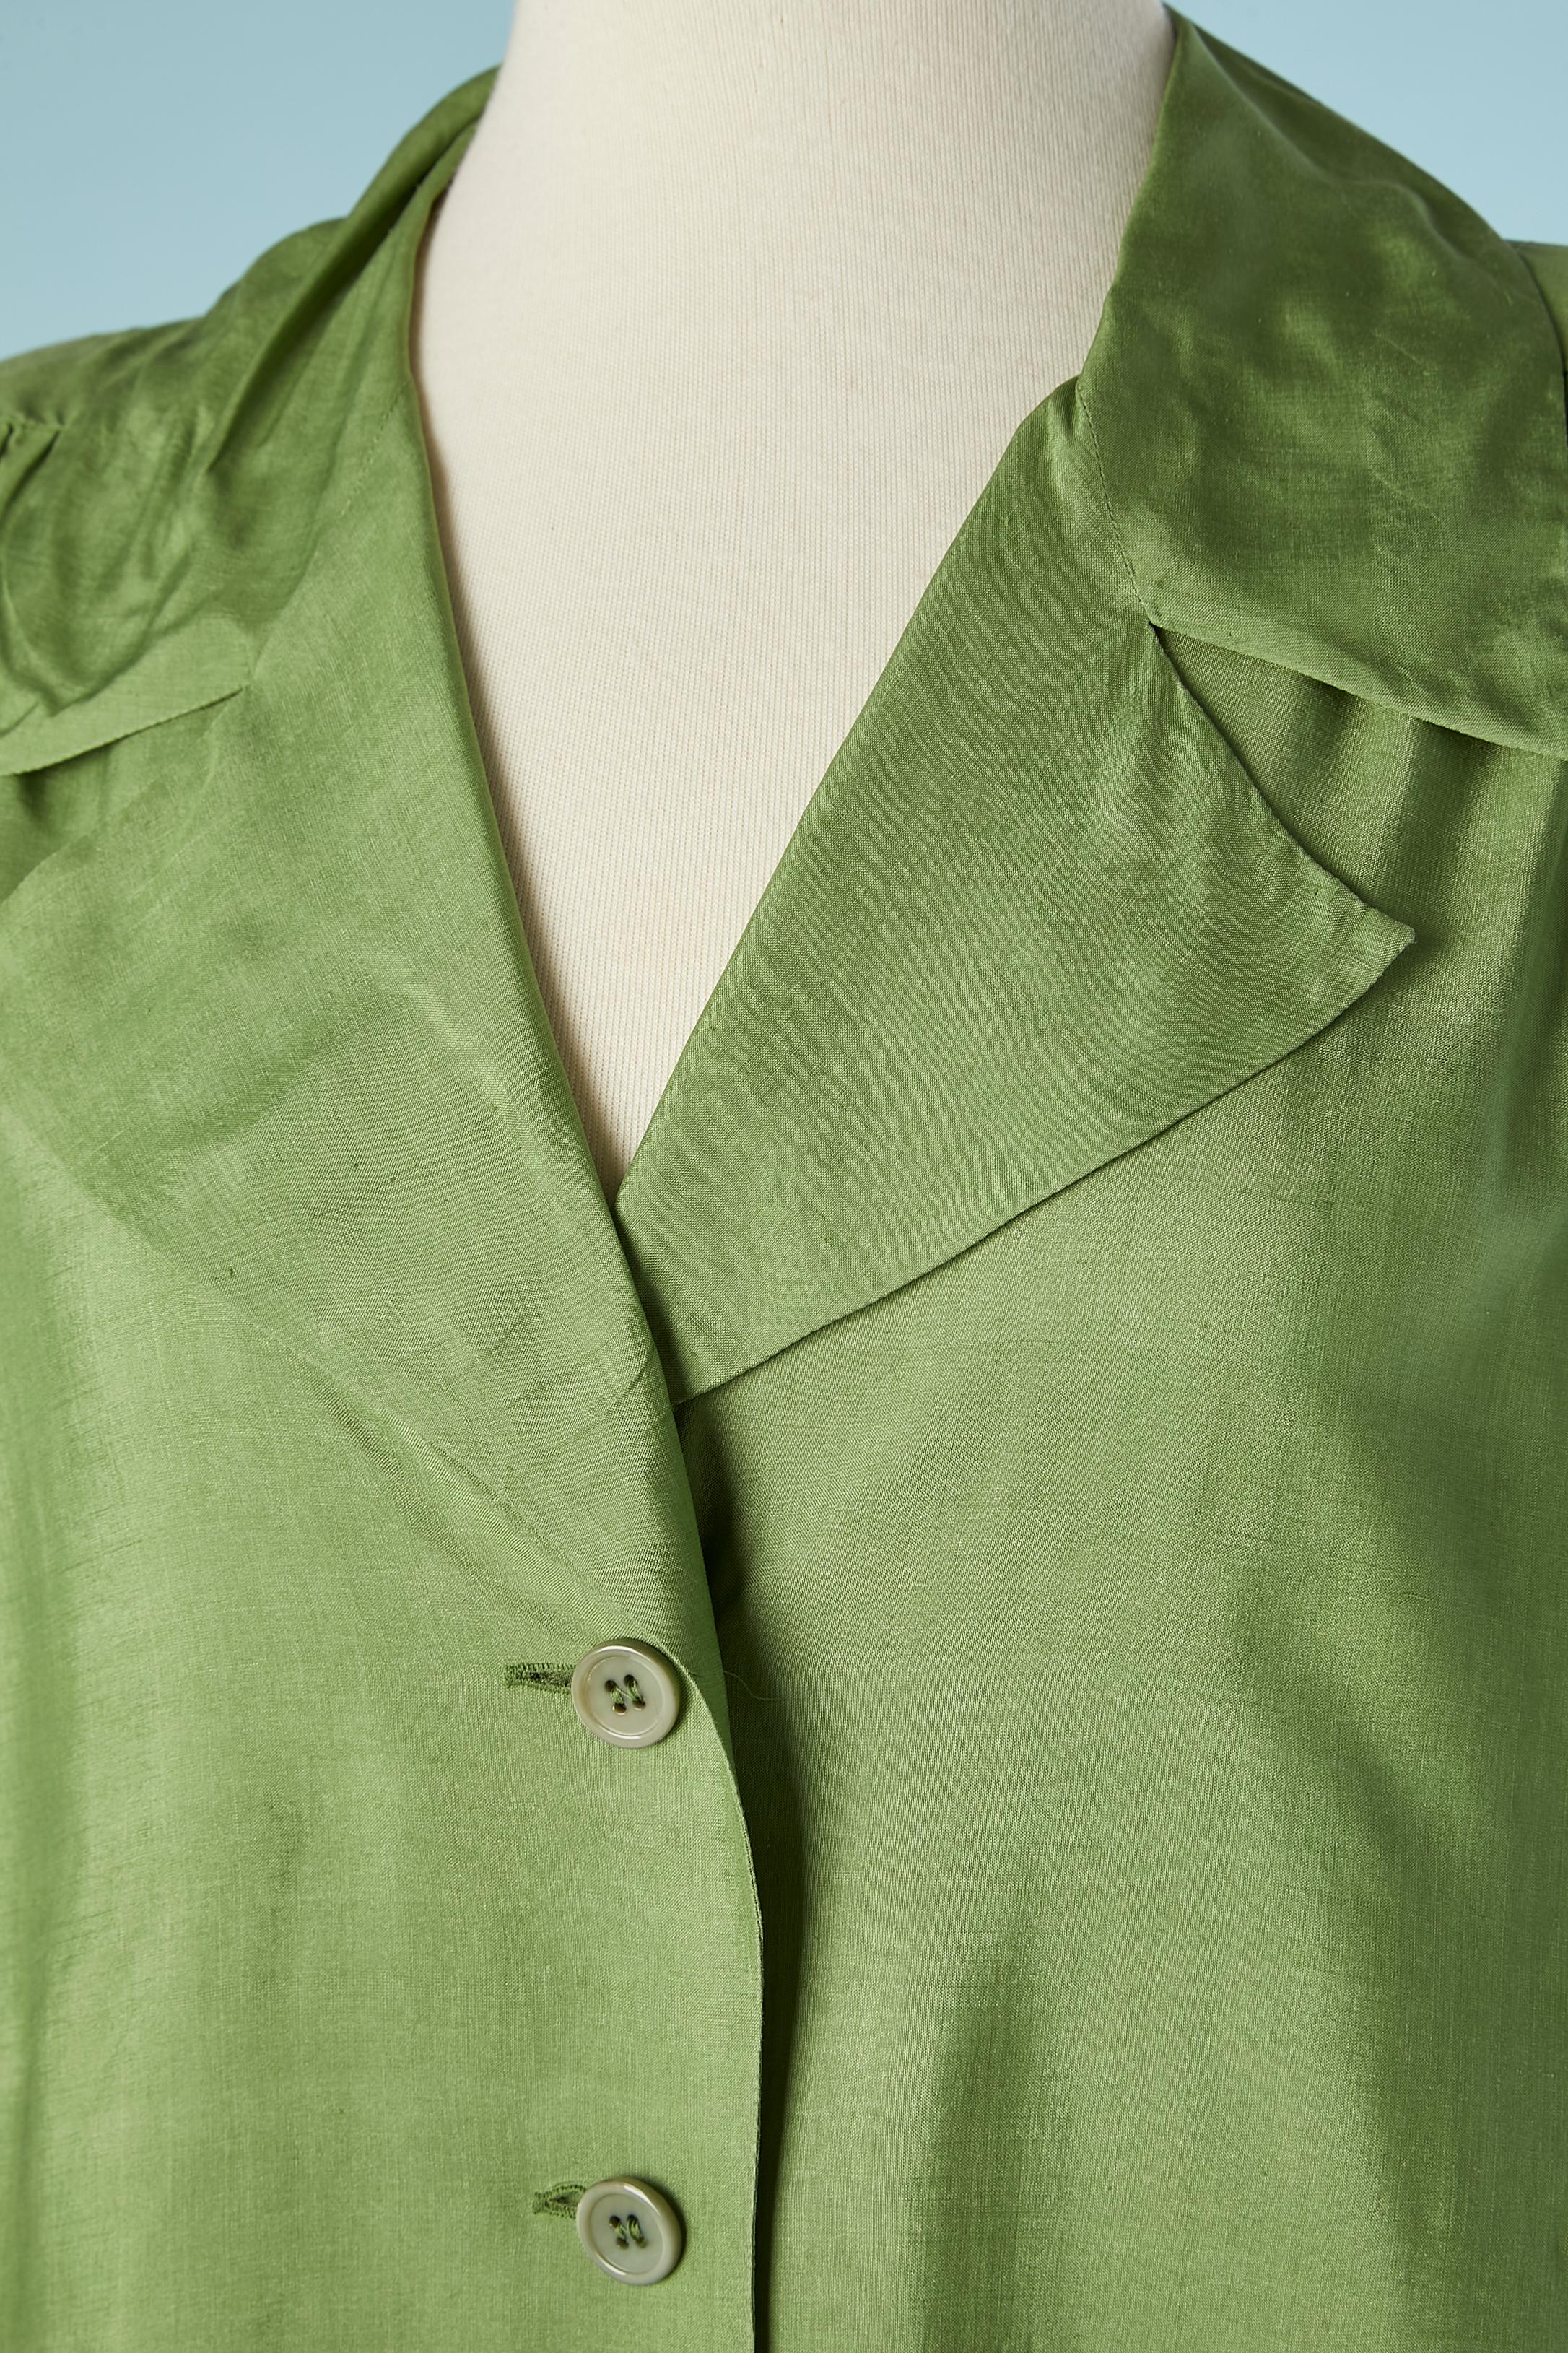 Grünes Rohseidenhemd. Schulterpads. Sammelt sich an der Schulterlinie.
SIZE 38 (Fr) 8 (Us) M 